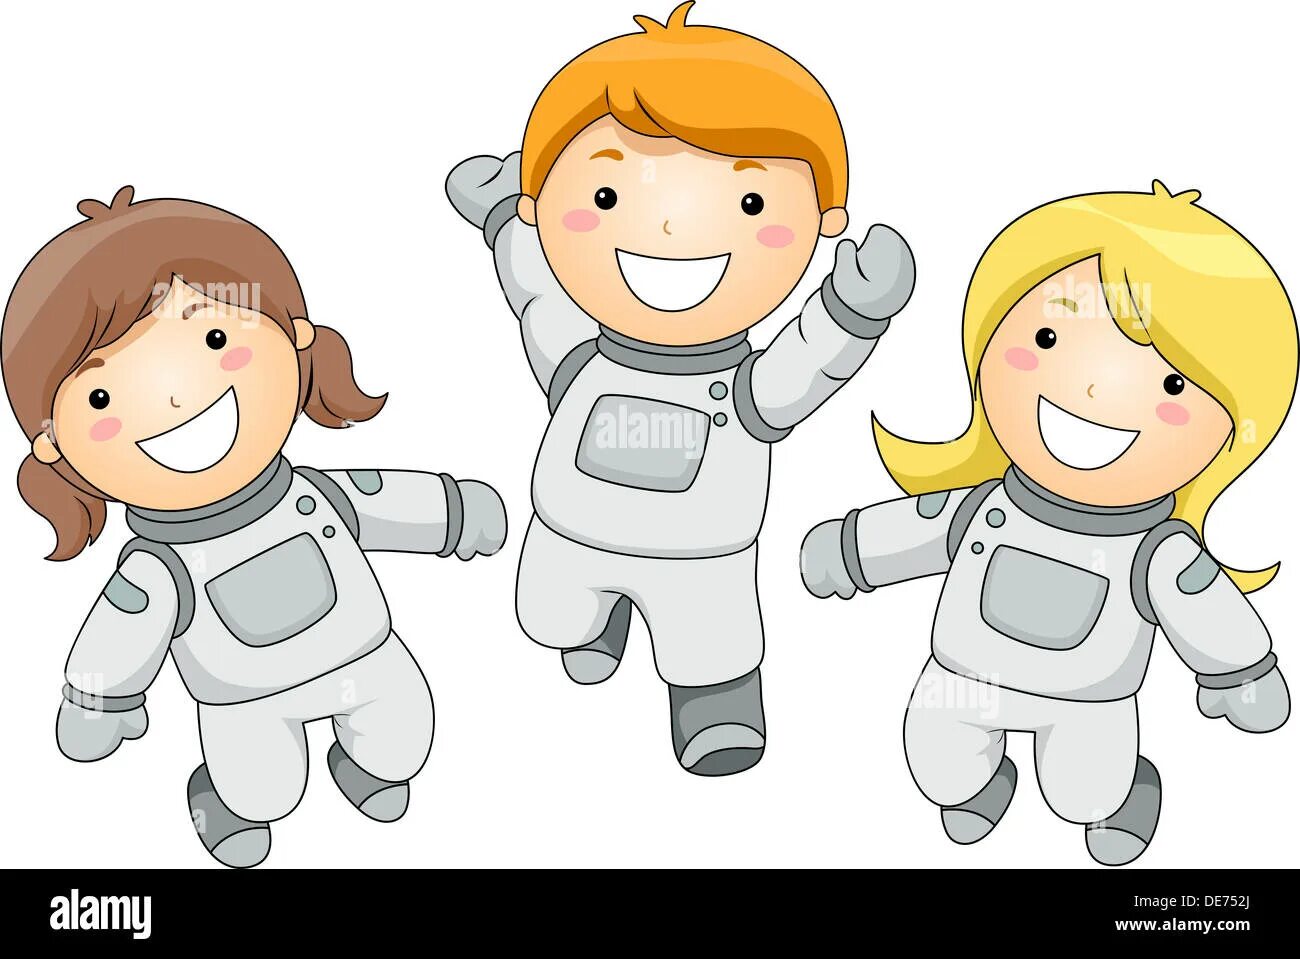 Зарядка про космос. Космонавт мальчик и девочка. Космонавт картинка для детей. Зарядка Космонавтов для дошкольников. Детям о космосе.